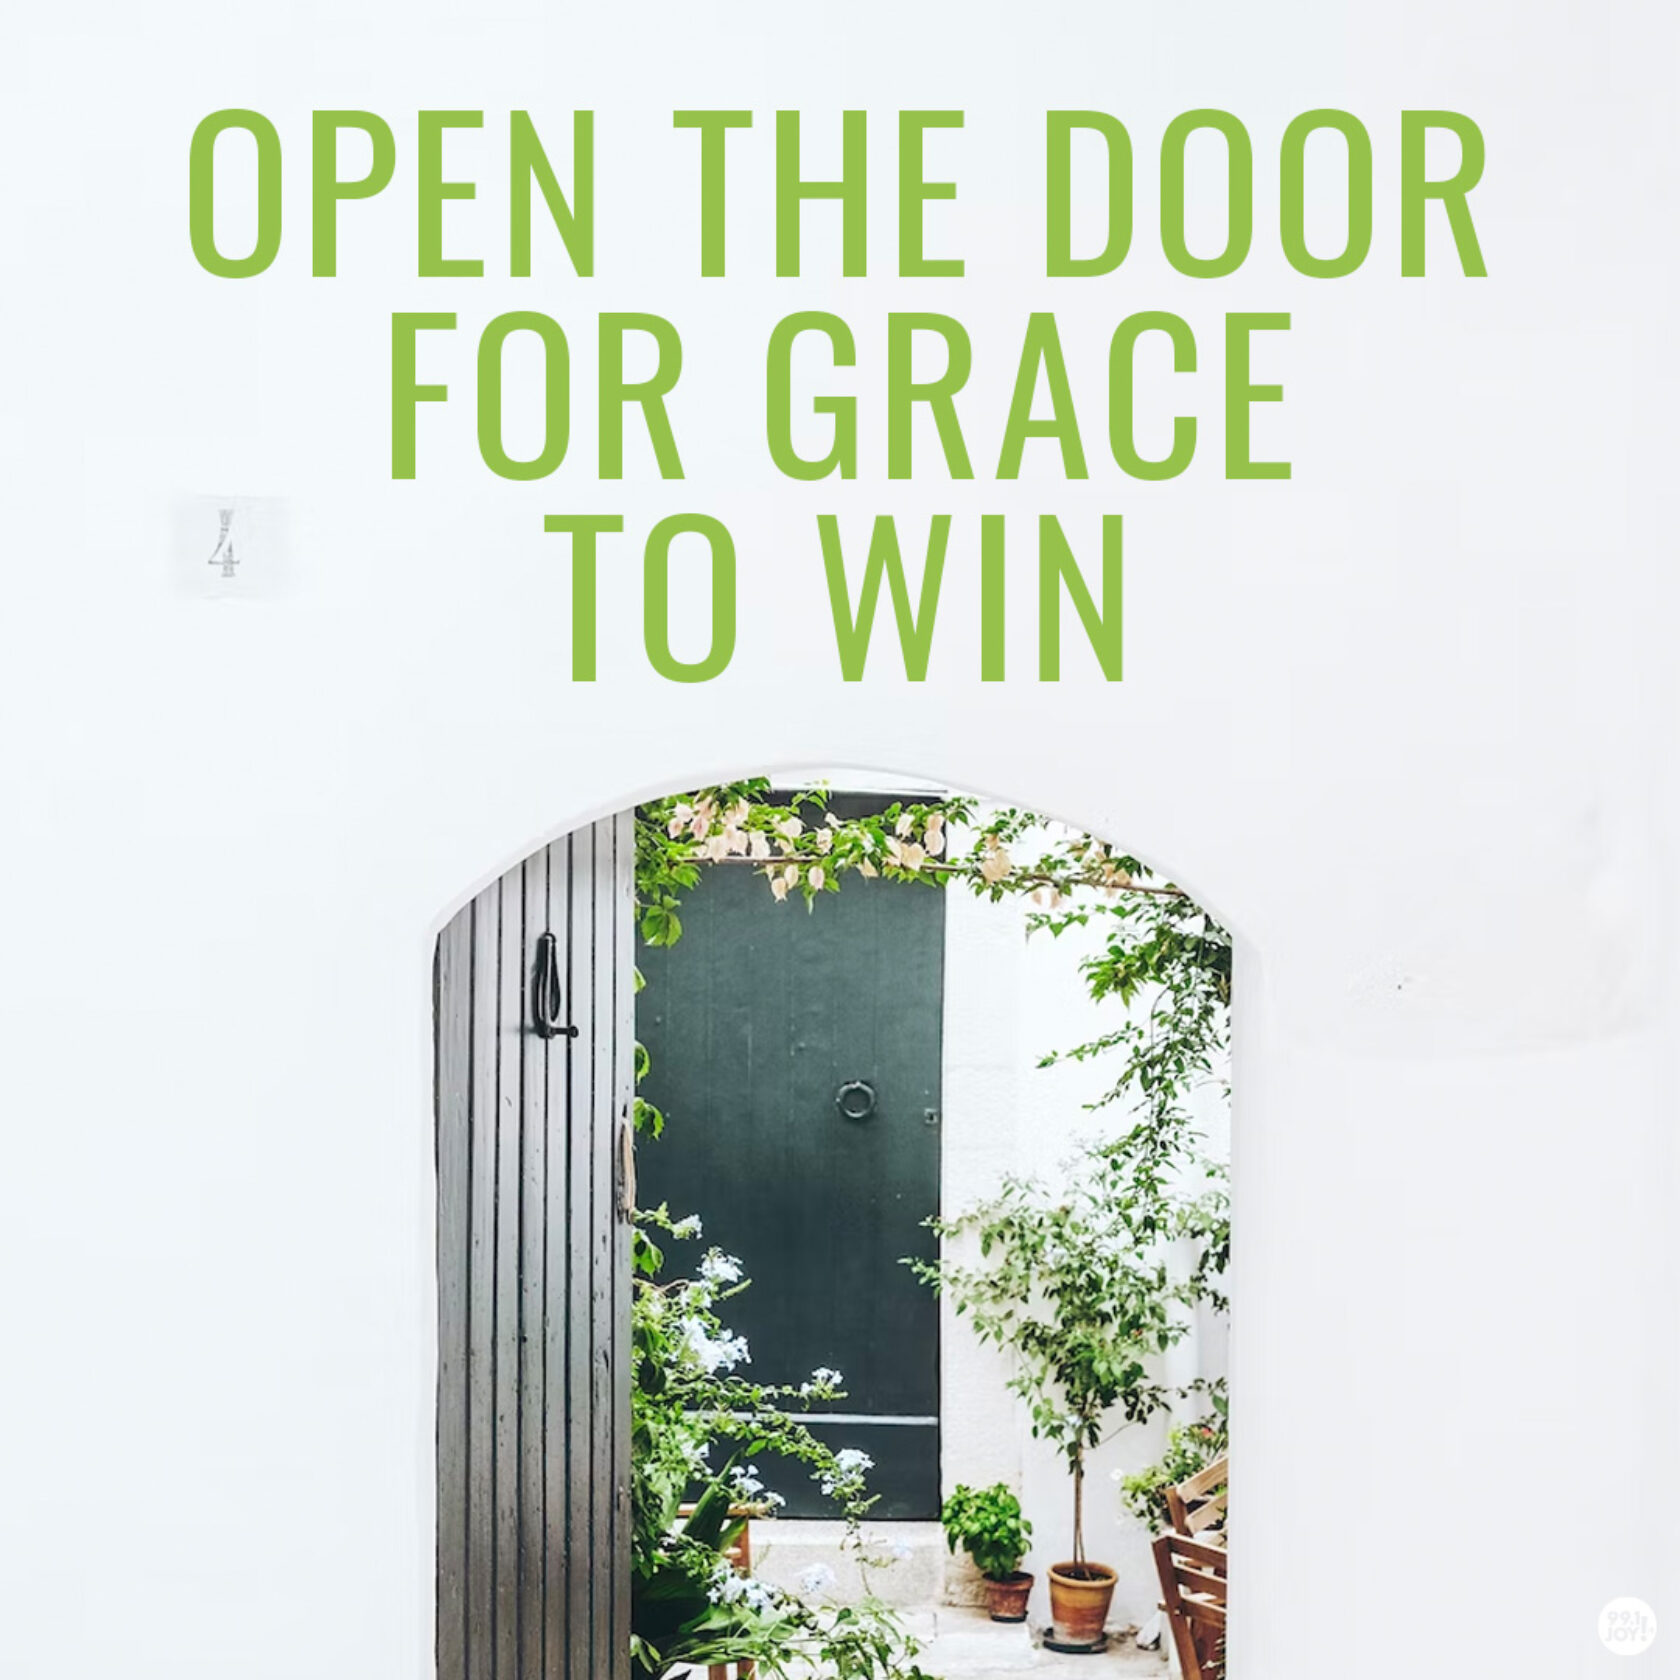 Open the door for grace to win